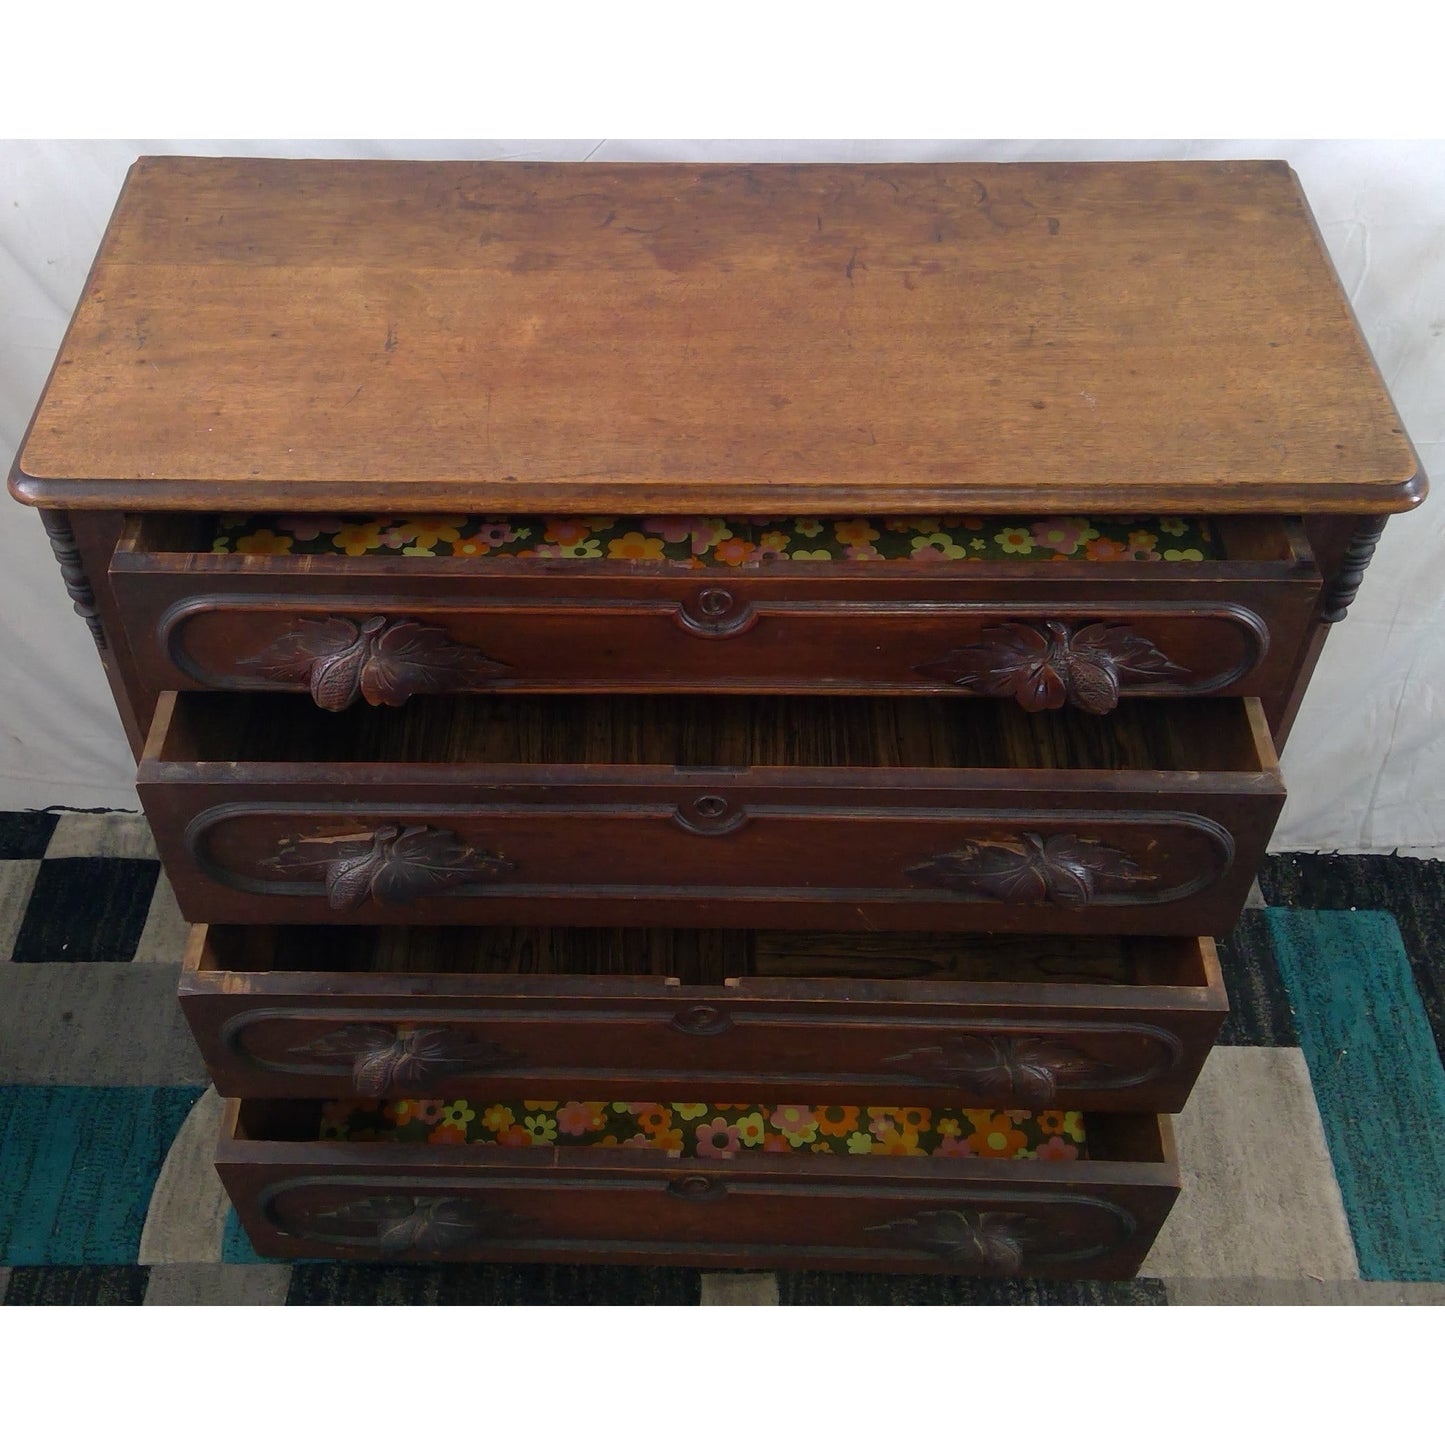 Antique Ornate Wood Dresser